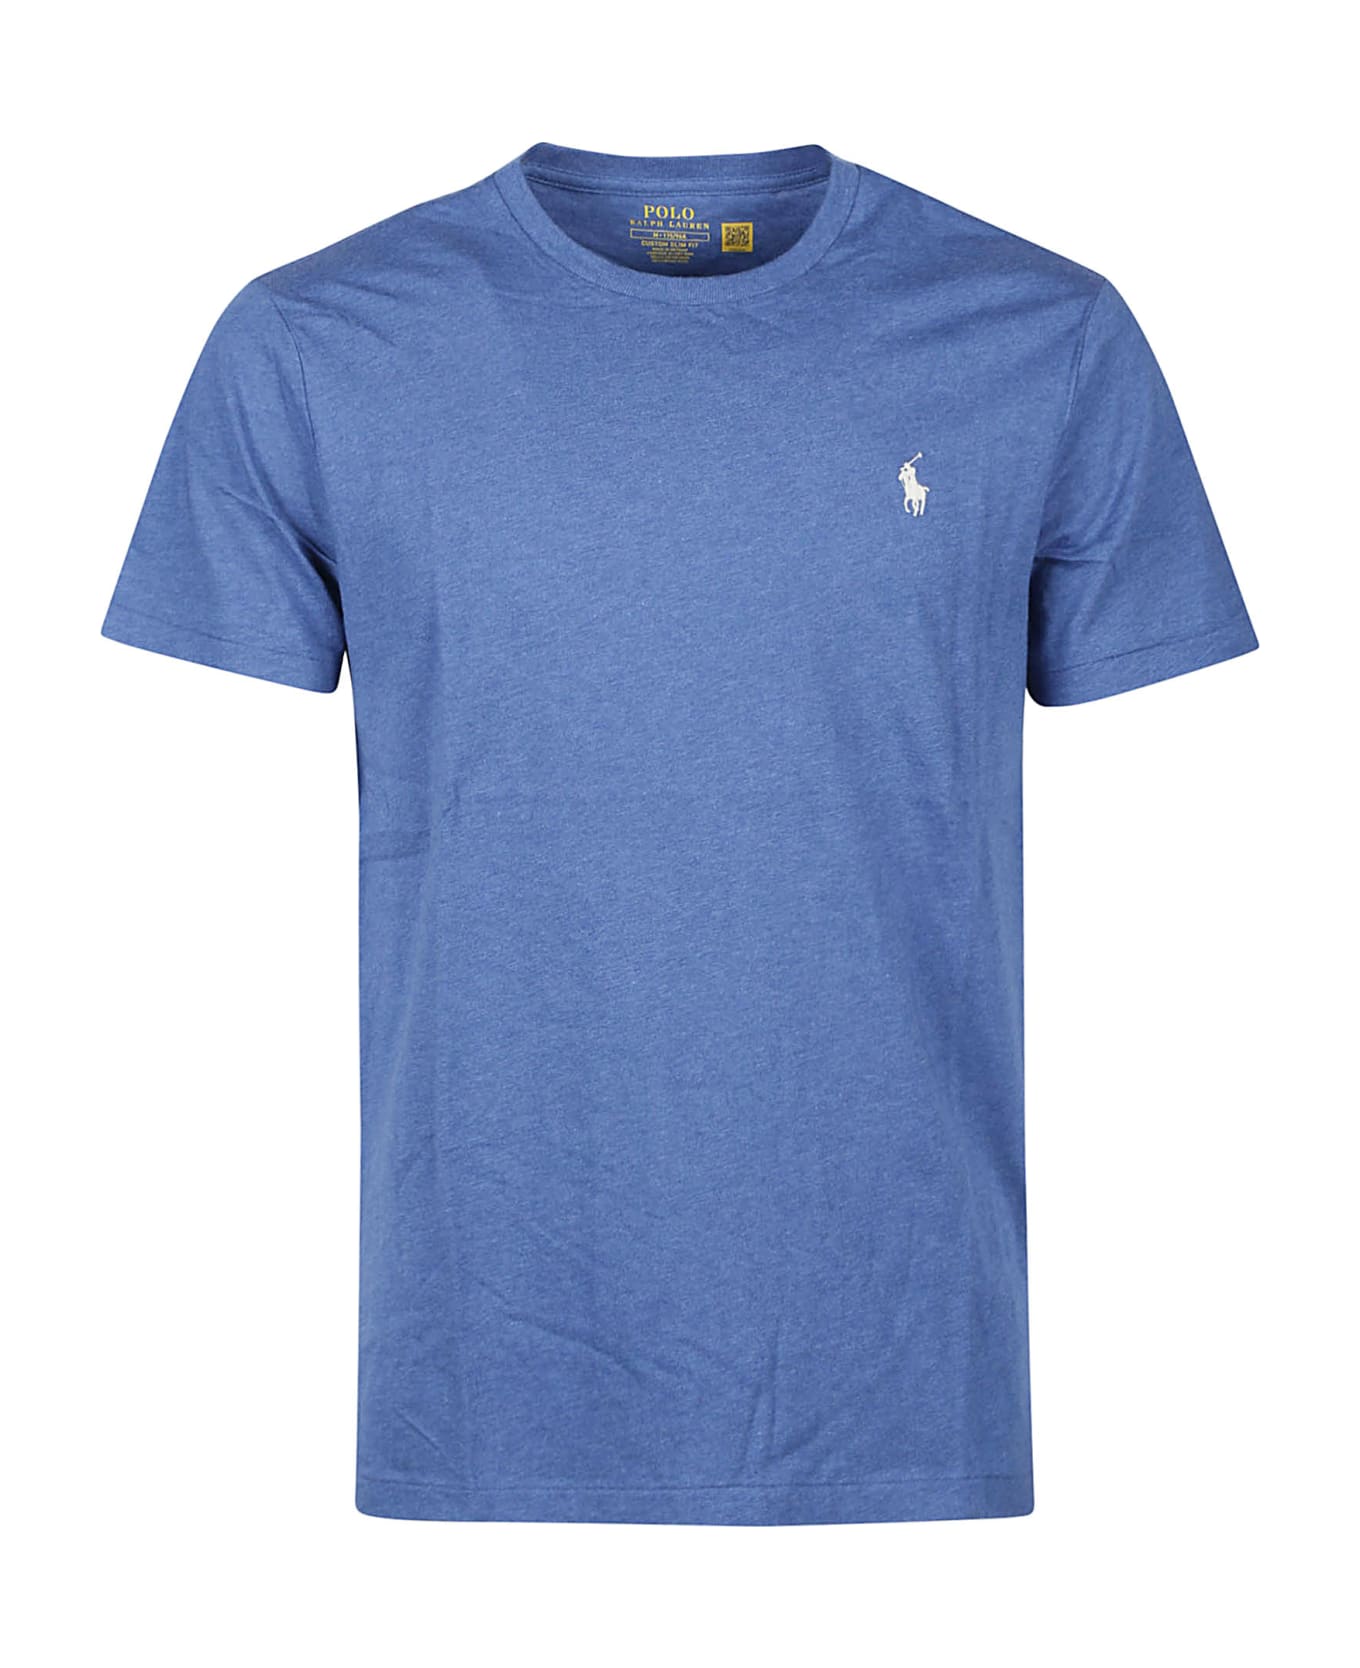 Ralph Lauren T-shirt - Fog Blue Heather